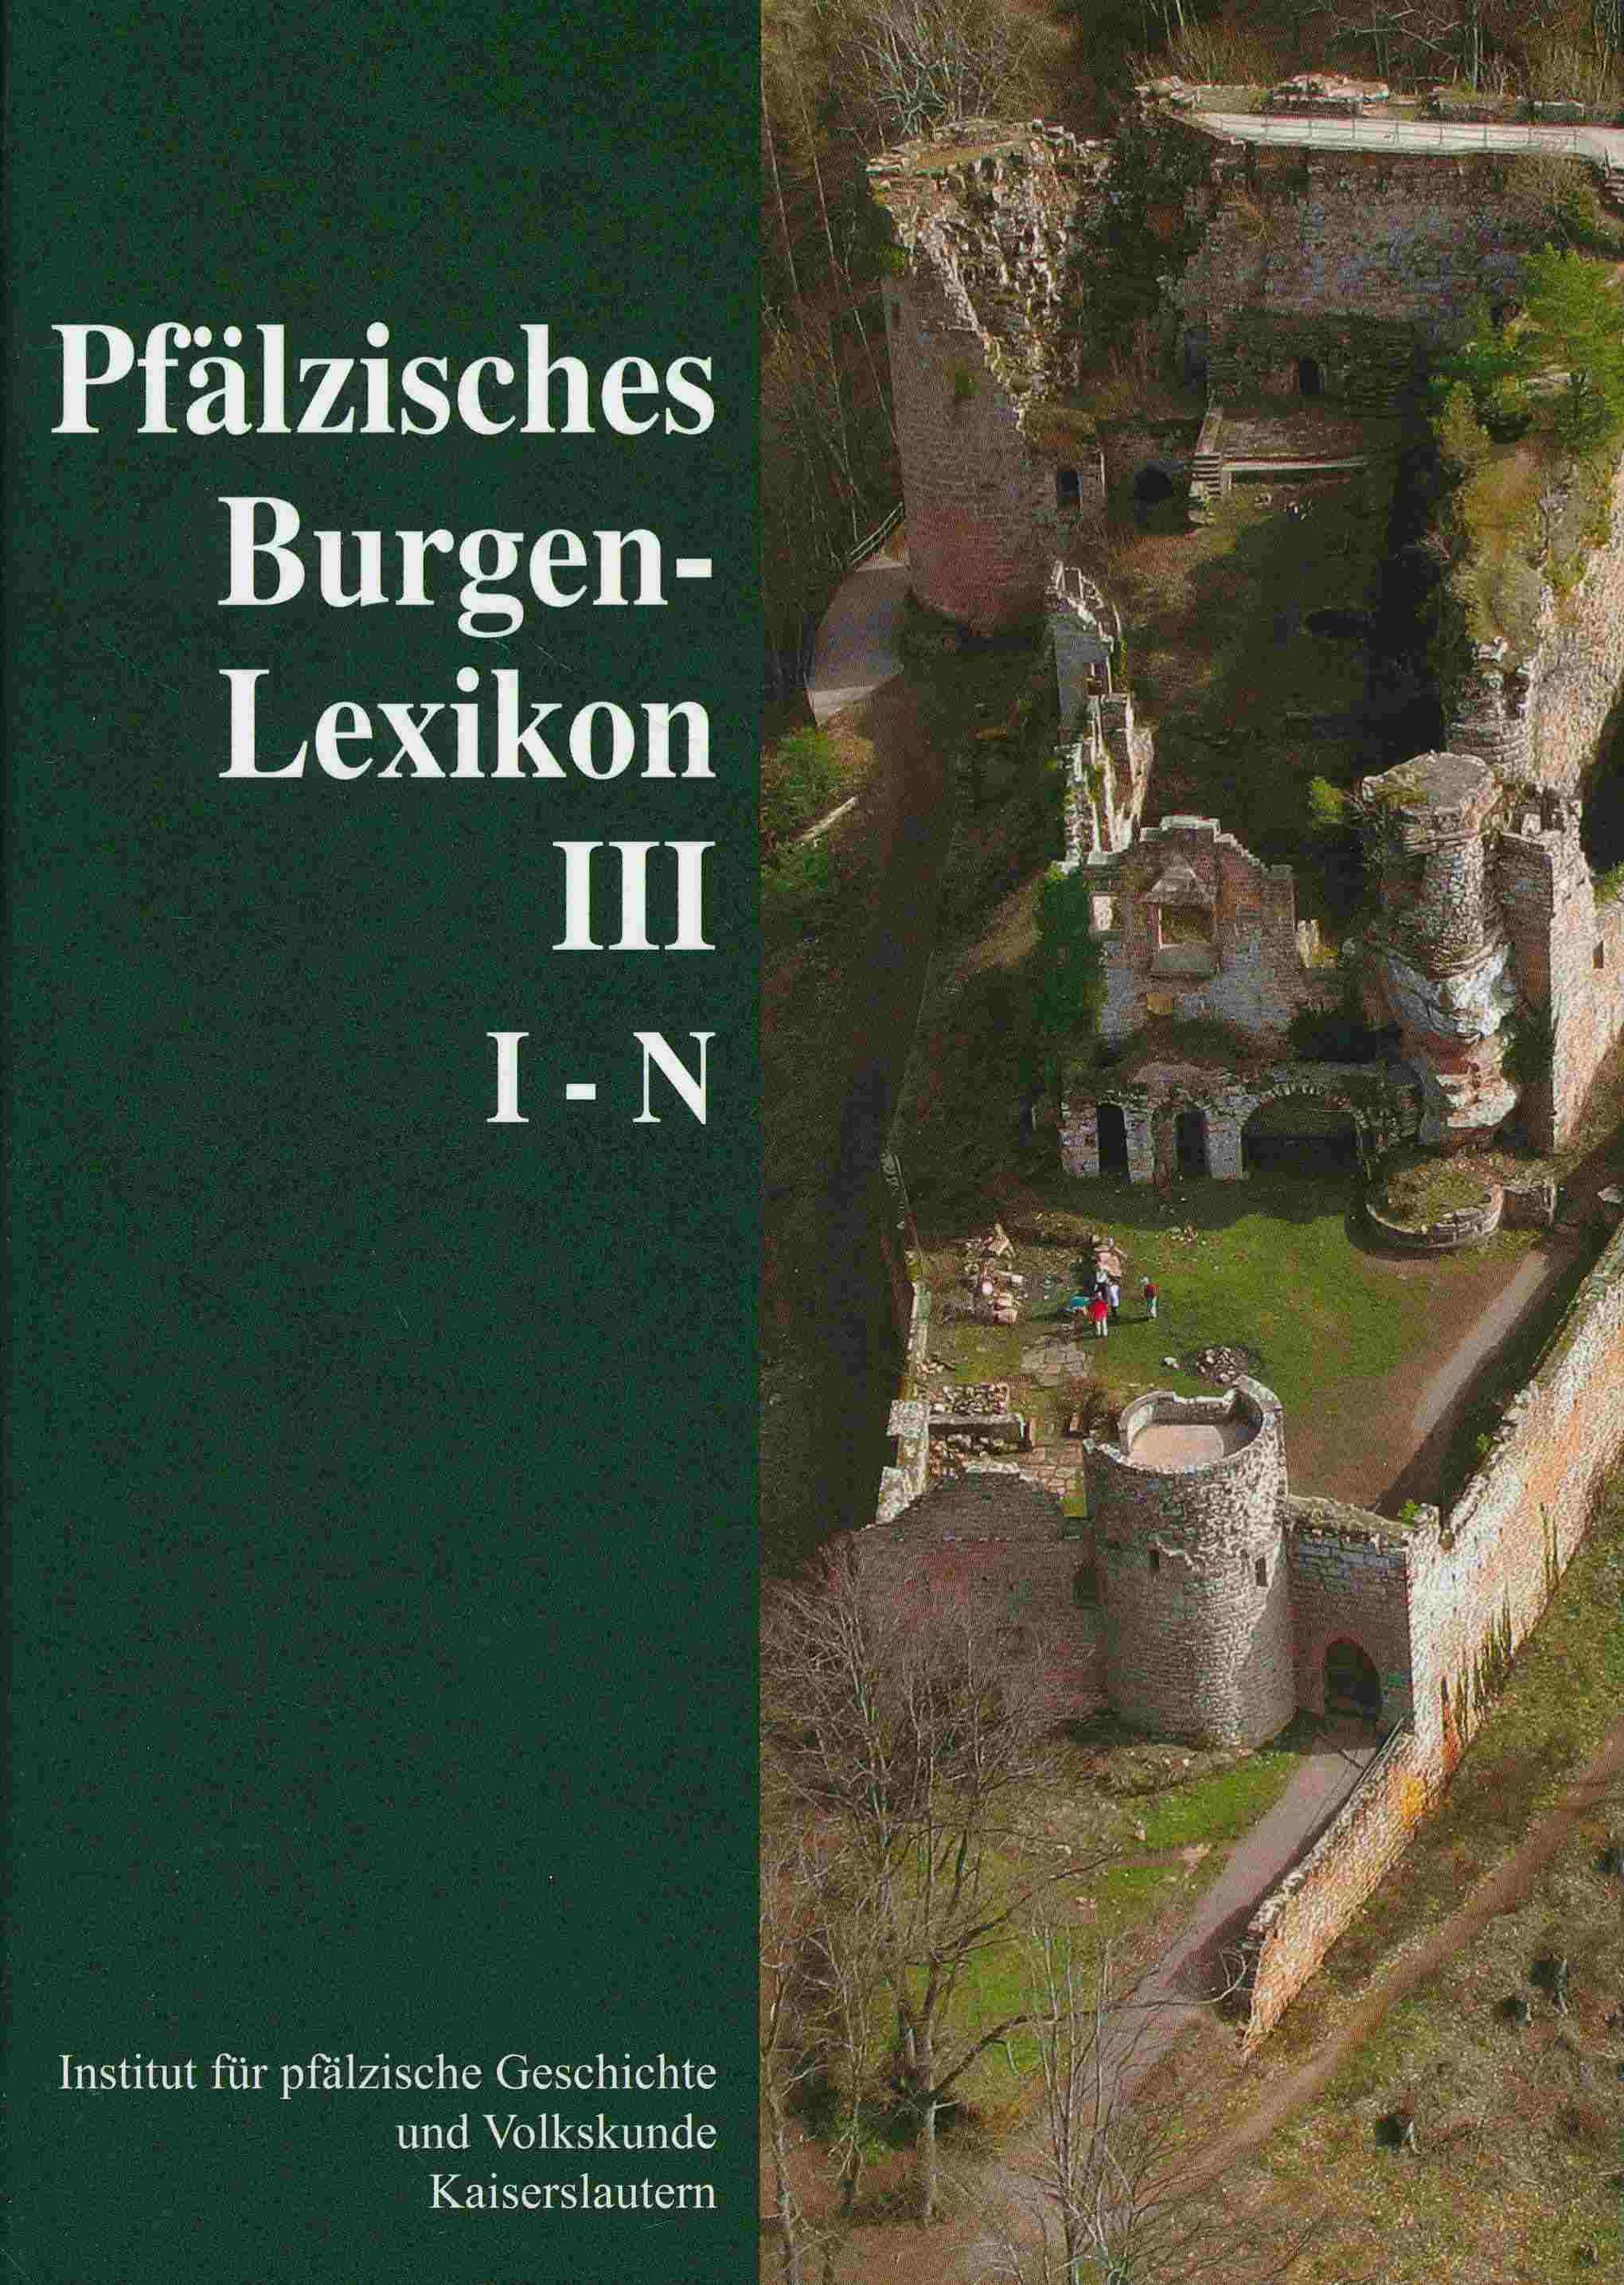 Pfälzisches Burgenlexikon. Band 3 : I - N. - Keddigkeit, Jürgen; Burkhart, Ulrich; Übel, Rolf